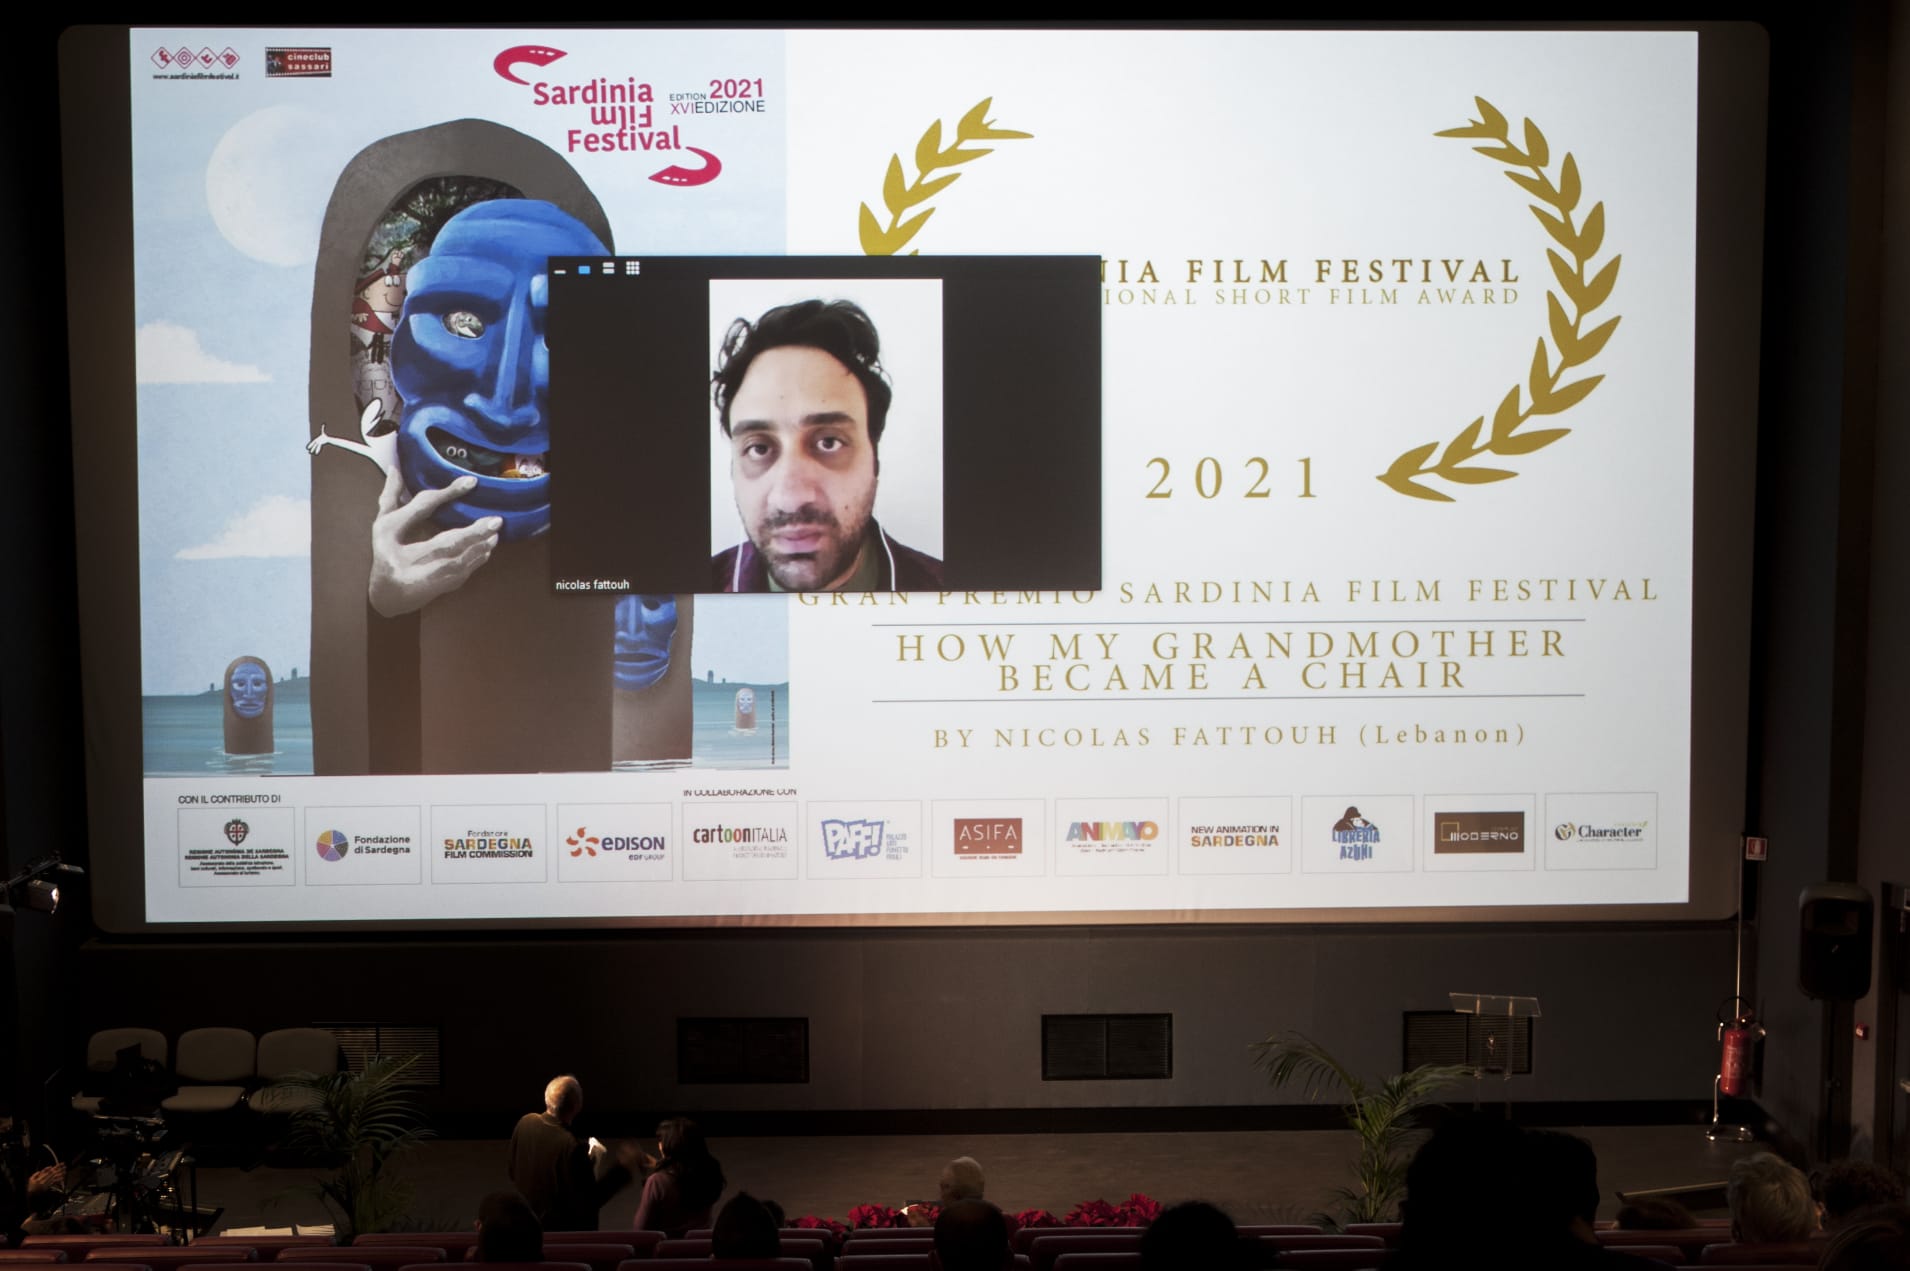 Nicolas Fattouh vincitore del Gran Premio Sardinia Film Festival 2021